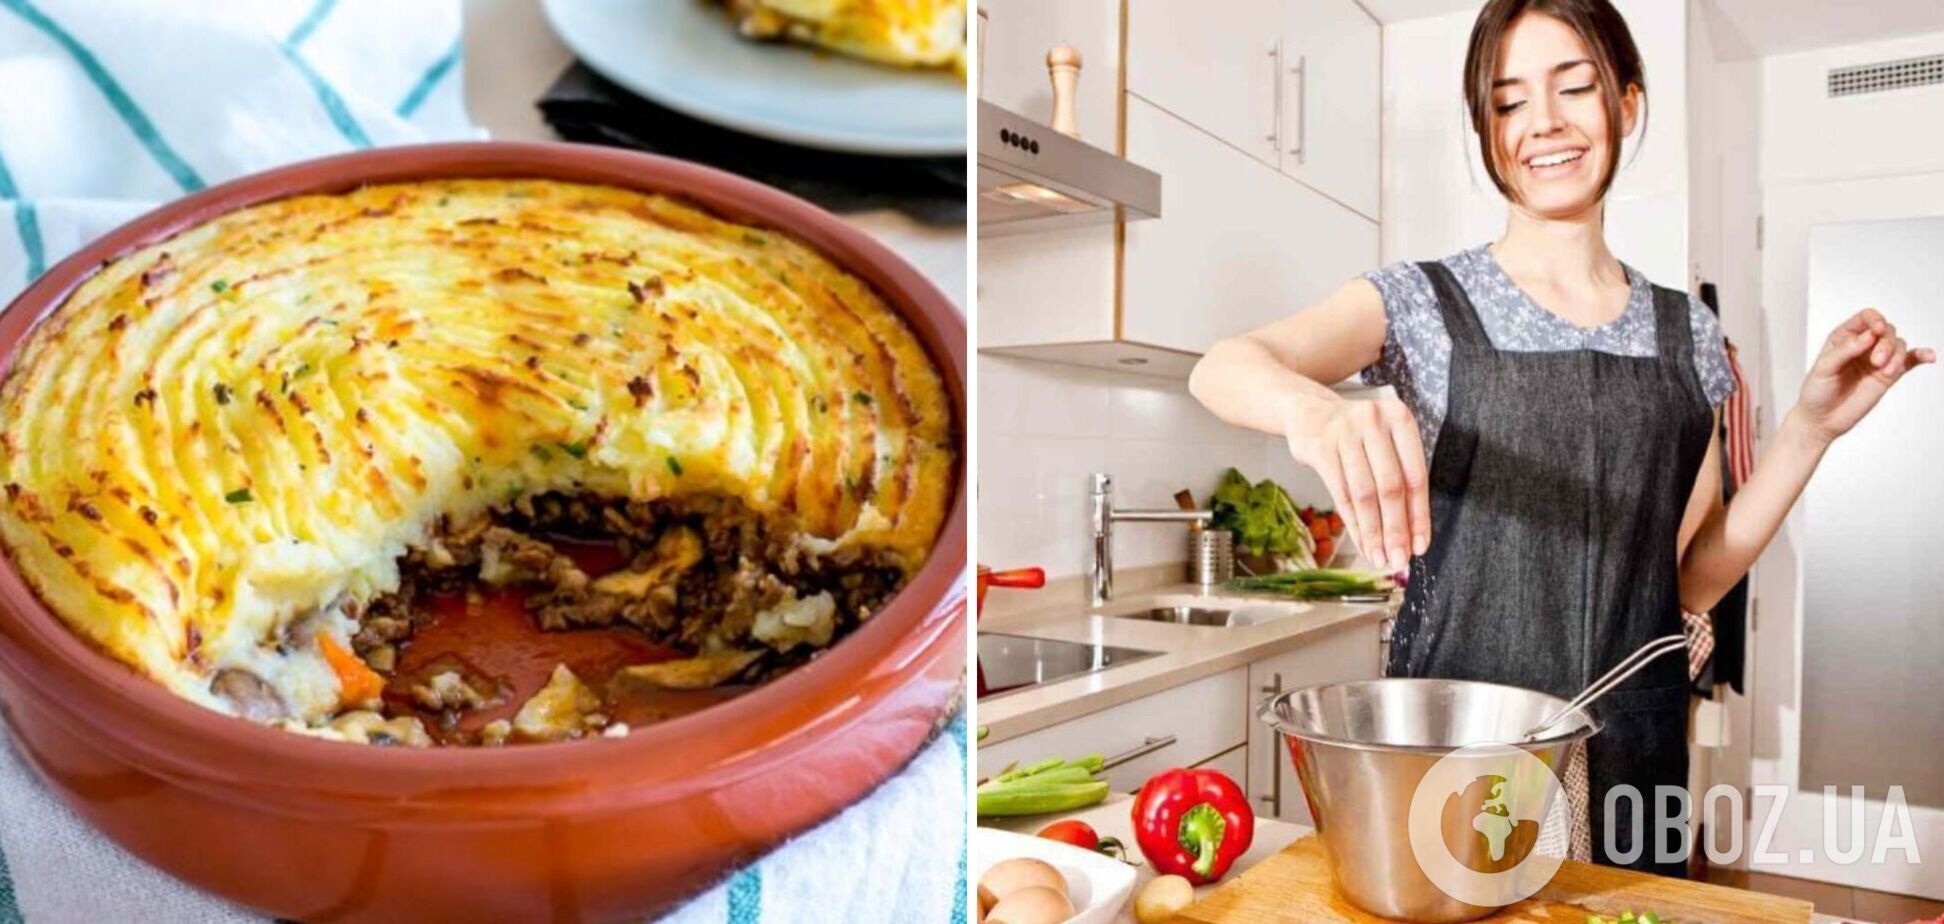 Пастуший пирог из картофеля на скорую руку: как приготовить универсальное блюдо